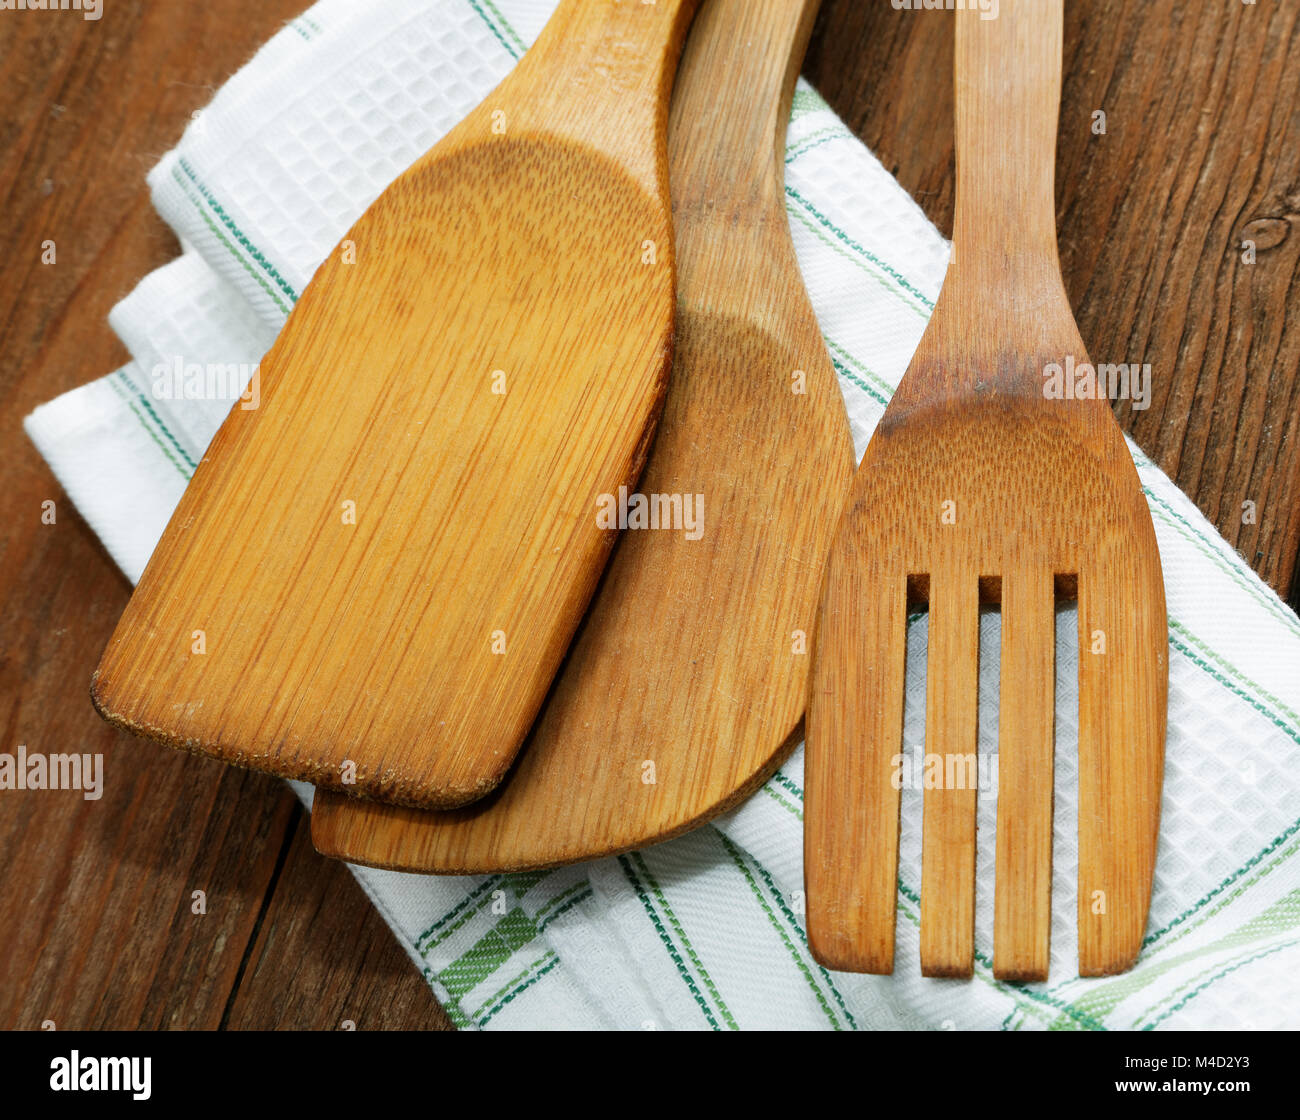 Serviettes de cuisine et des lames pour la viande sur la table Banque D'Images